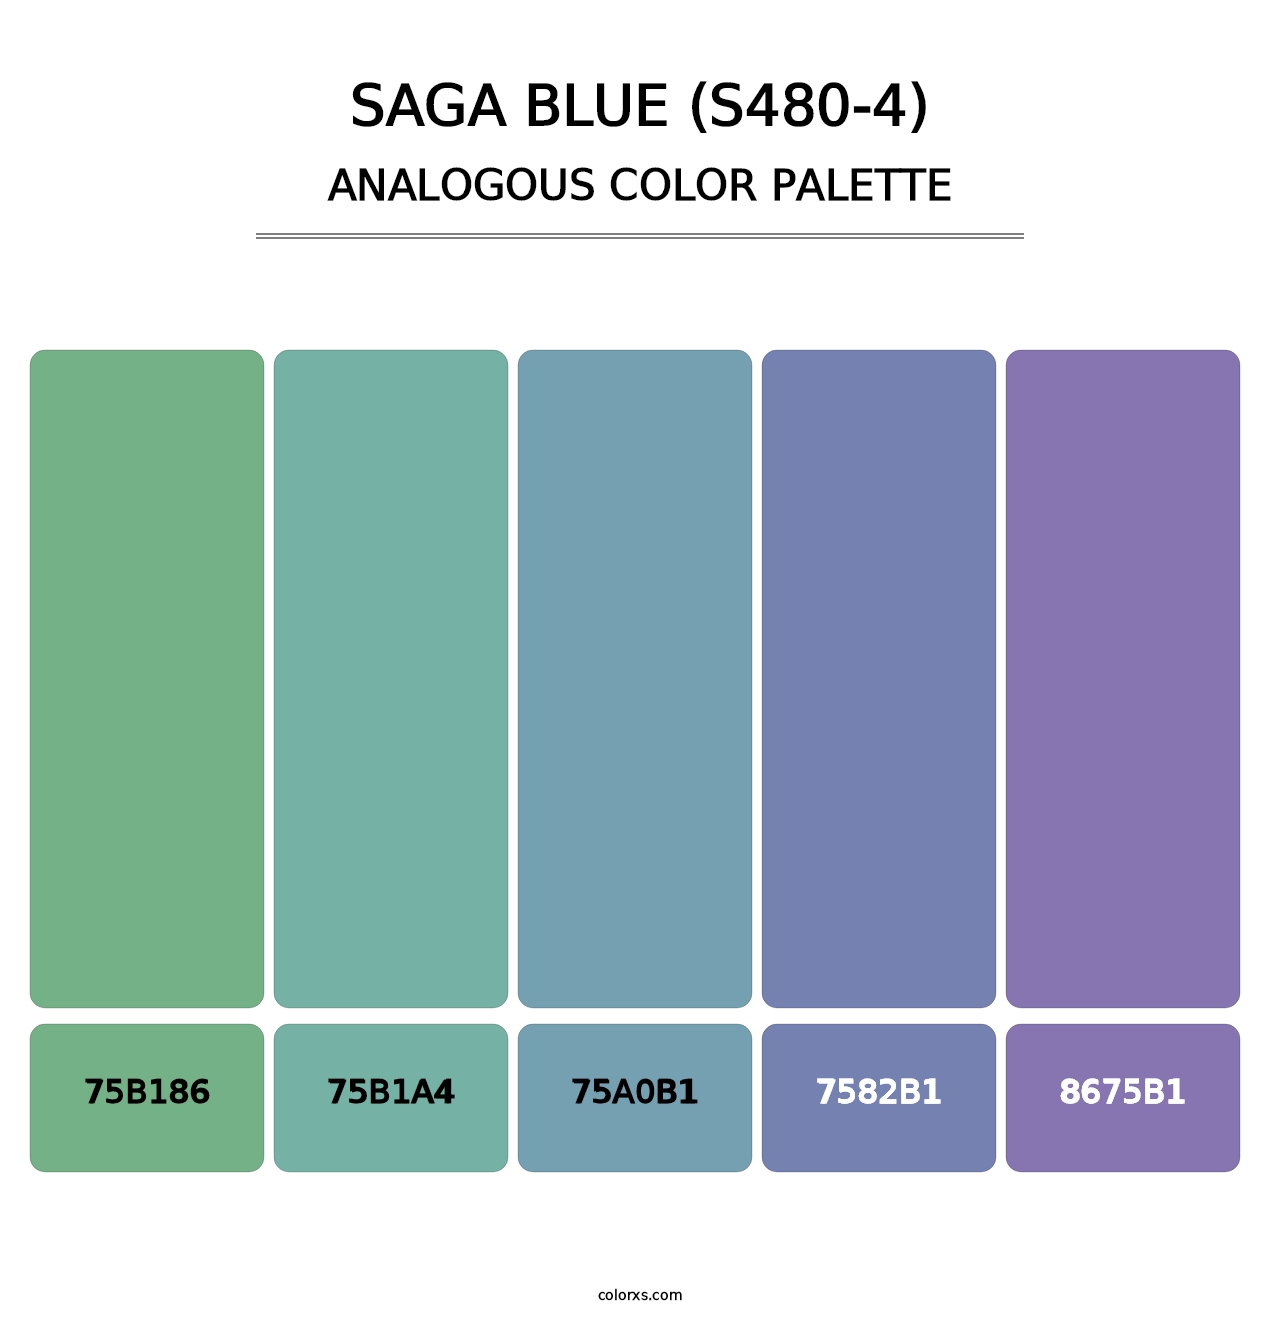 Saga Blue (S480-4) - Analogous Color Palette